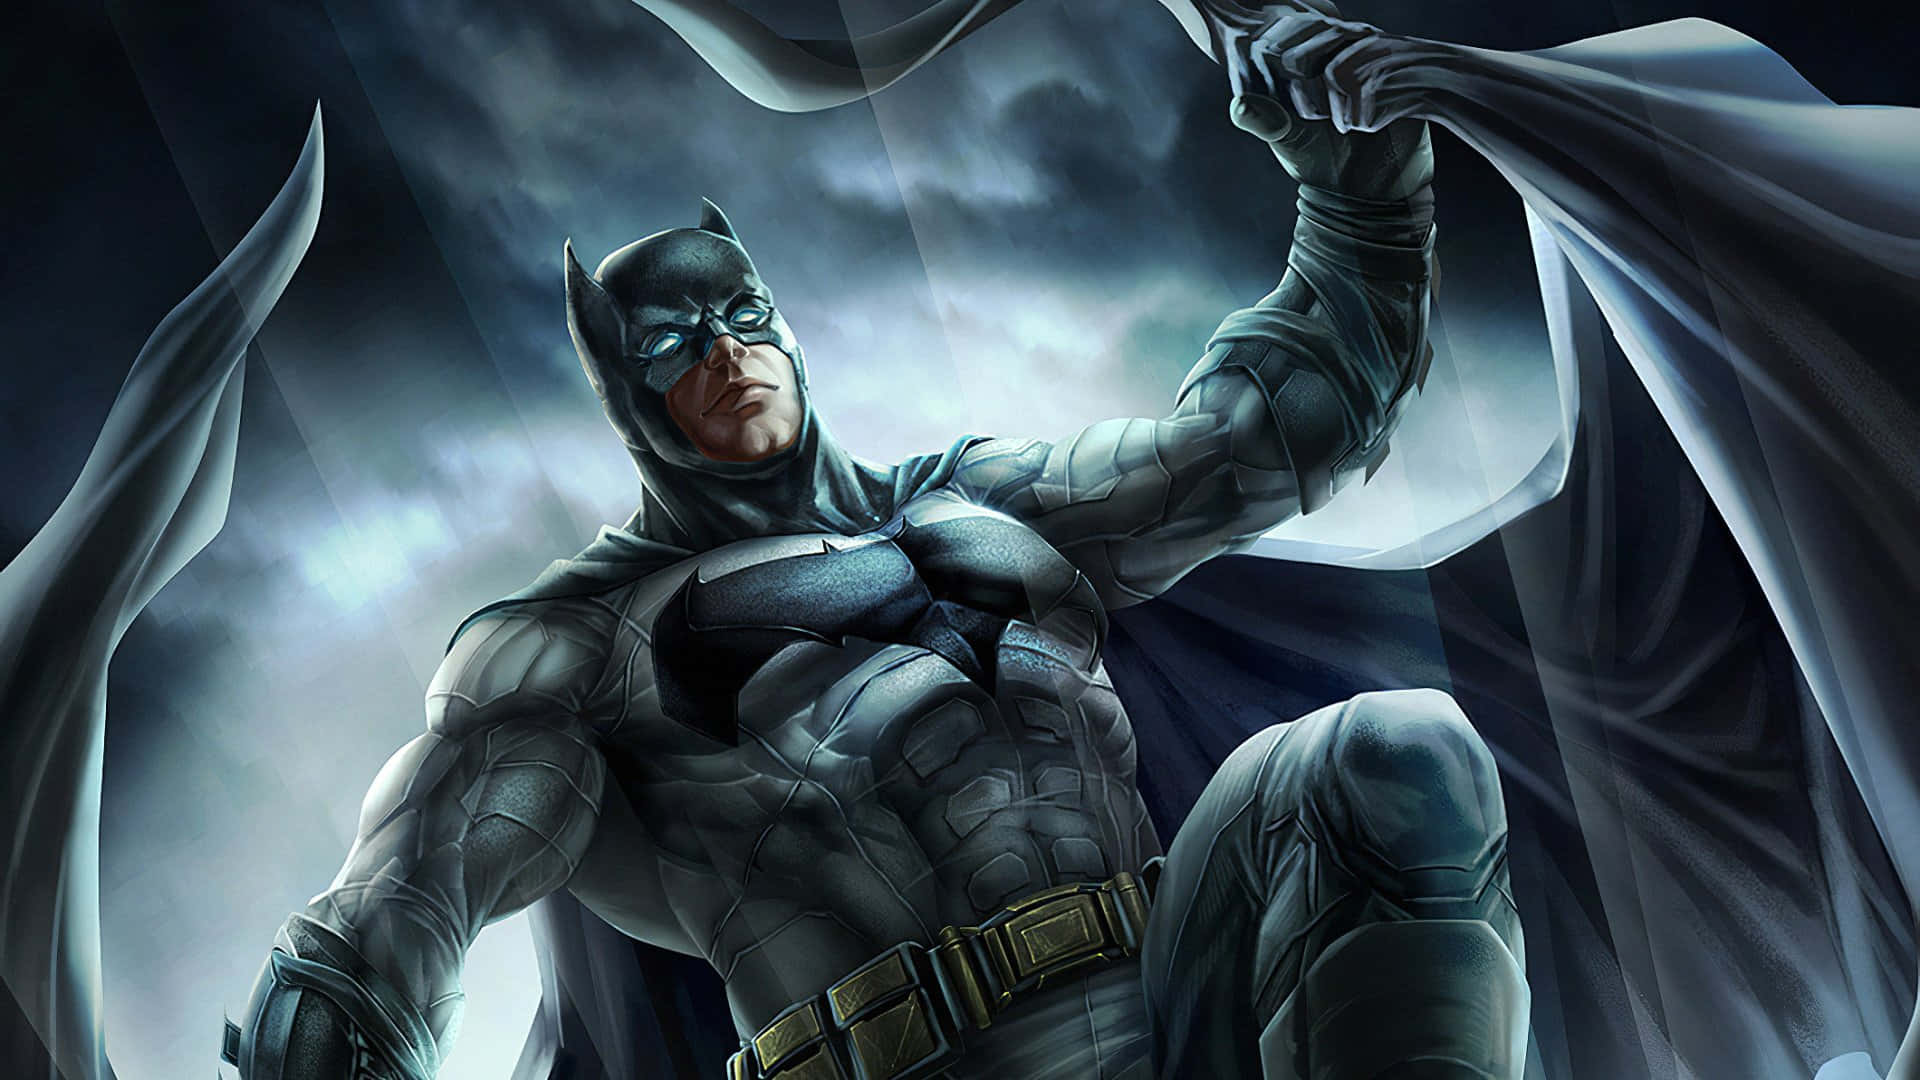 Batman Digital Art In Stormy Sky Picture